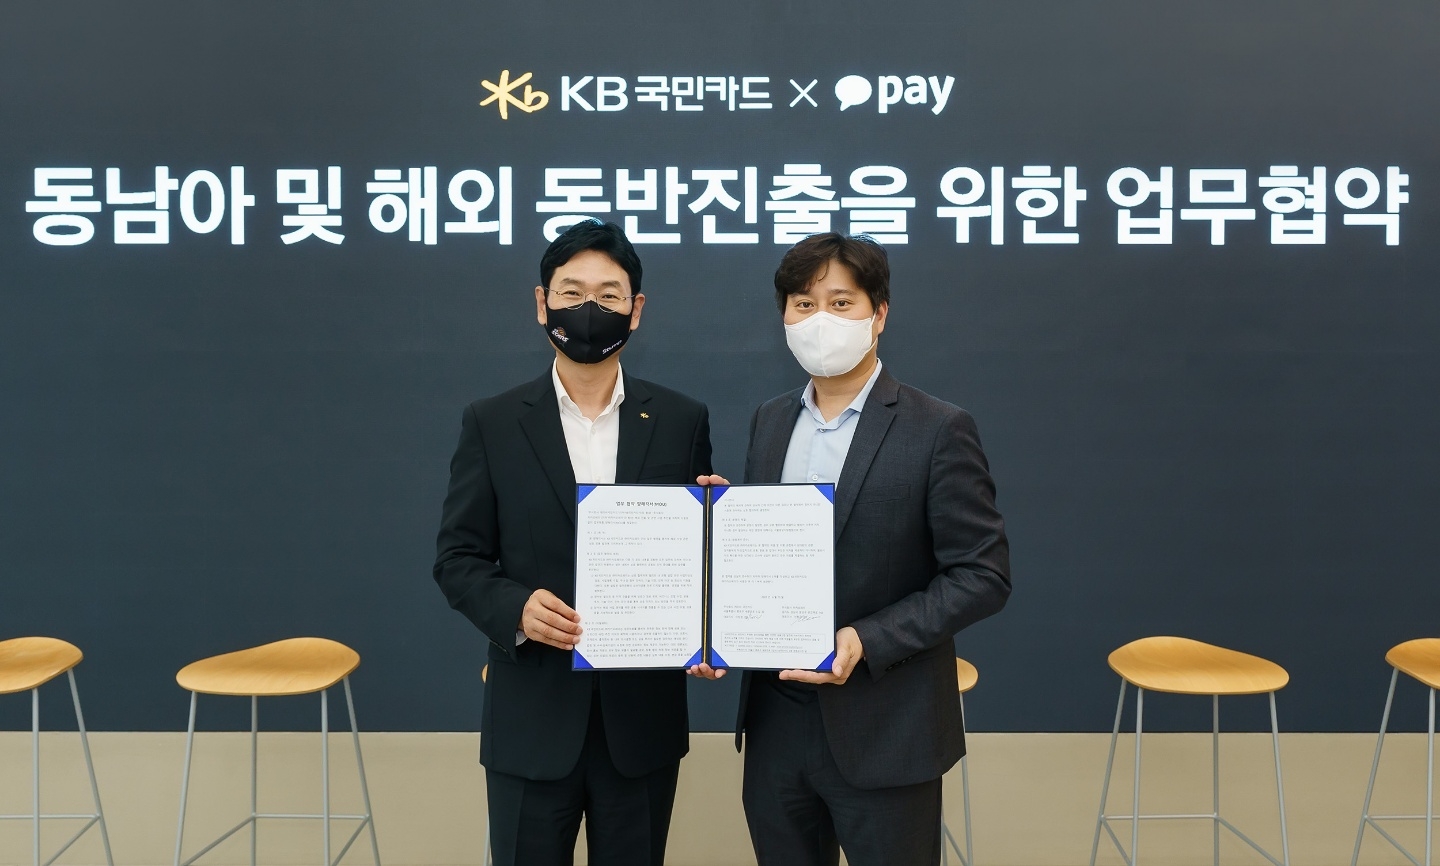 이창권 KB국민카드 사장(왼쪽)과 신원근 카카오페이 대표(오른쪽)가 지난 15일 동남아 및 해외 동반진출을 위한 업무협약을 체결했다. /사진제공=KB국민카드